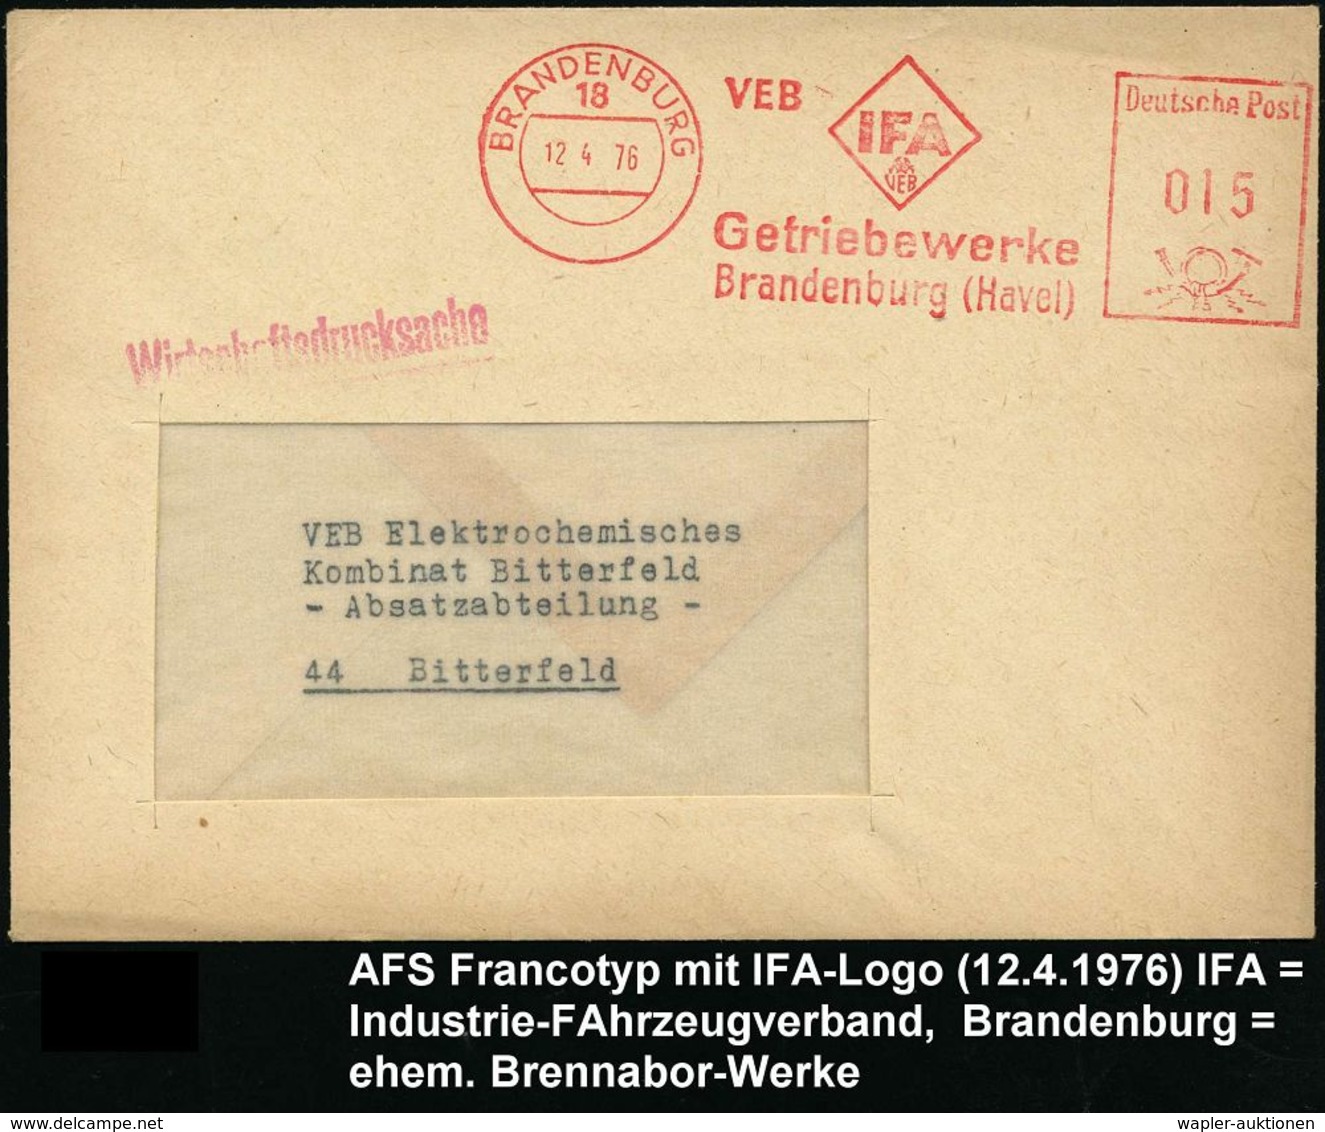 AUTOHERSTELLER D.D.R. : 18 BRANDENBURG/ VEB IFA/ VEB/ Getriebewerke 1976 (12.4.) AFS (Logo) = Ex Brennabor-Werke = Trakt - Cars